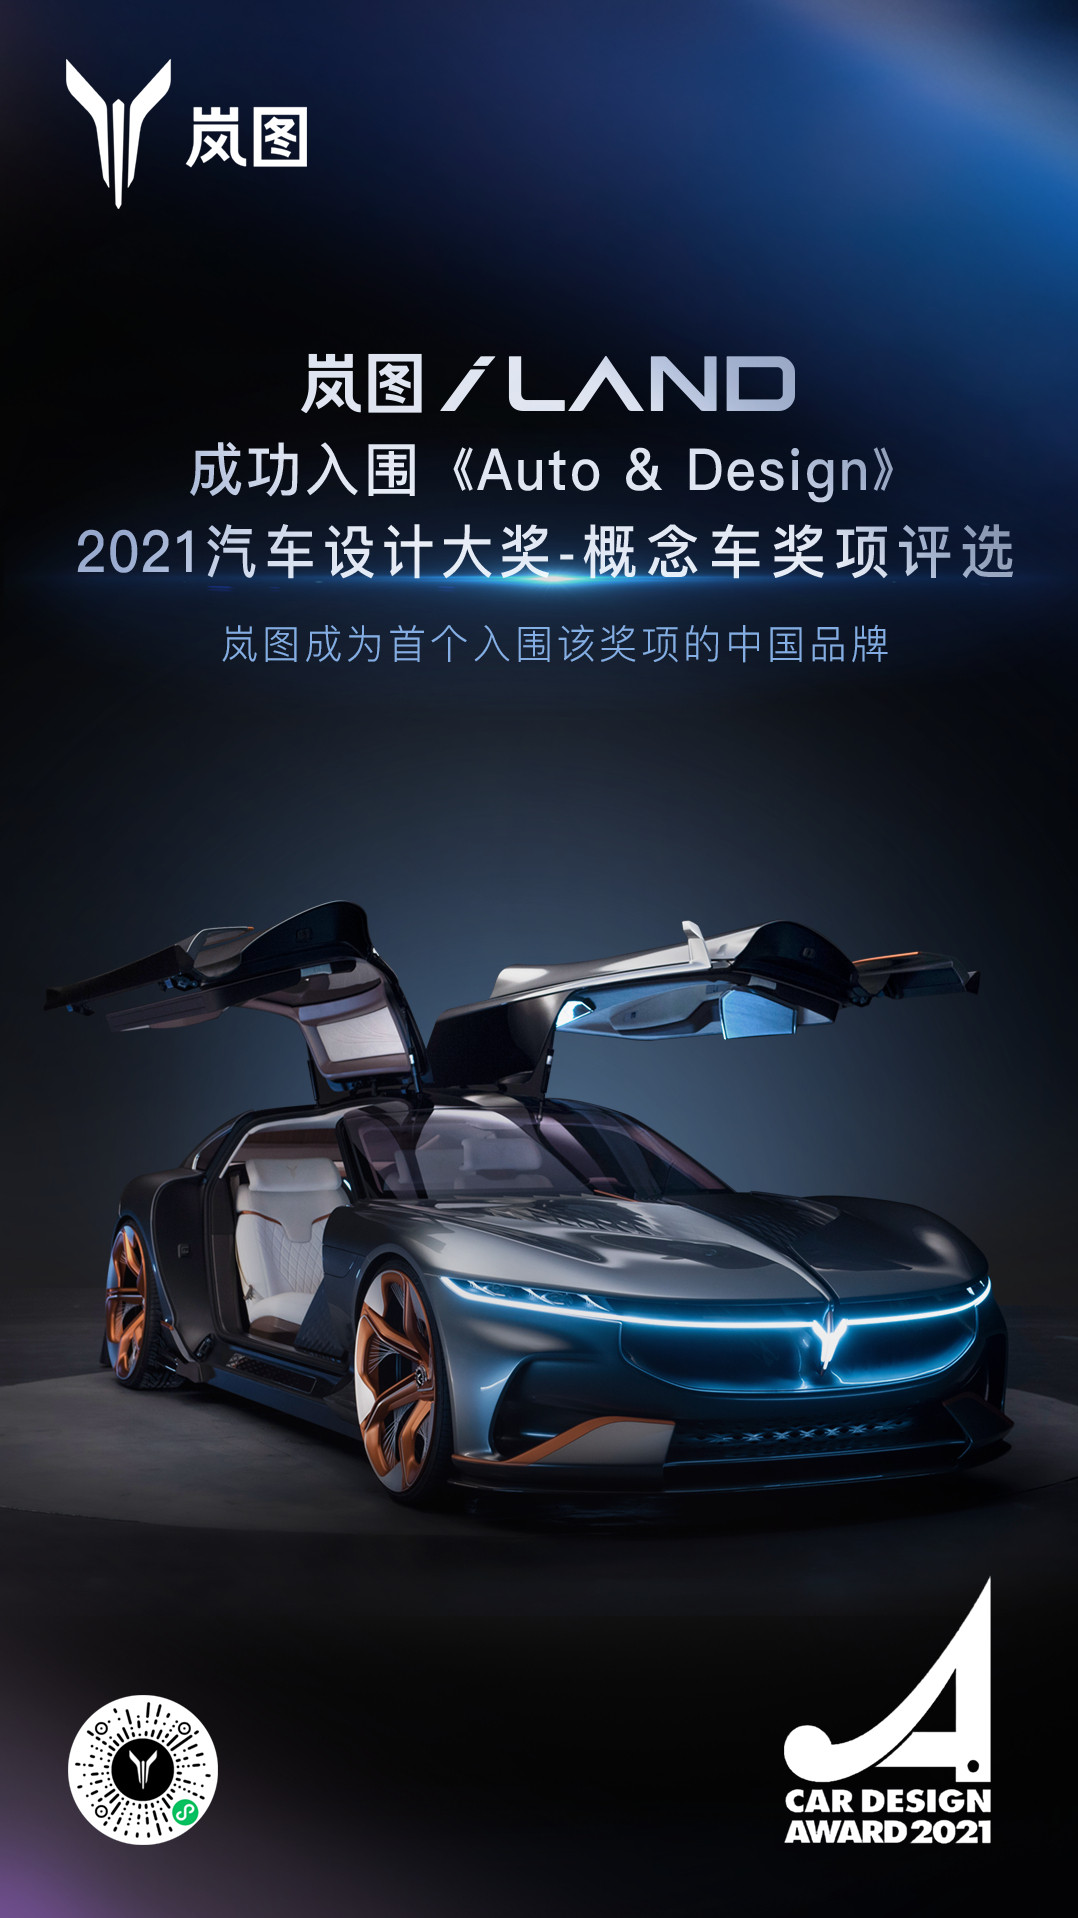 岚图成为首个入选汽车设计大奖的中国品牌.jpg